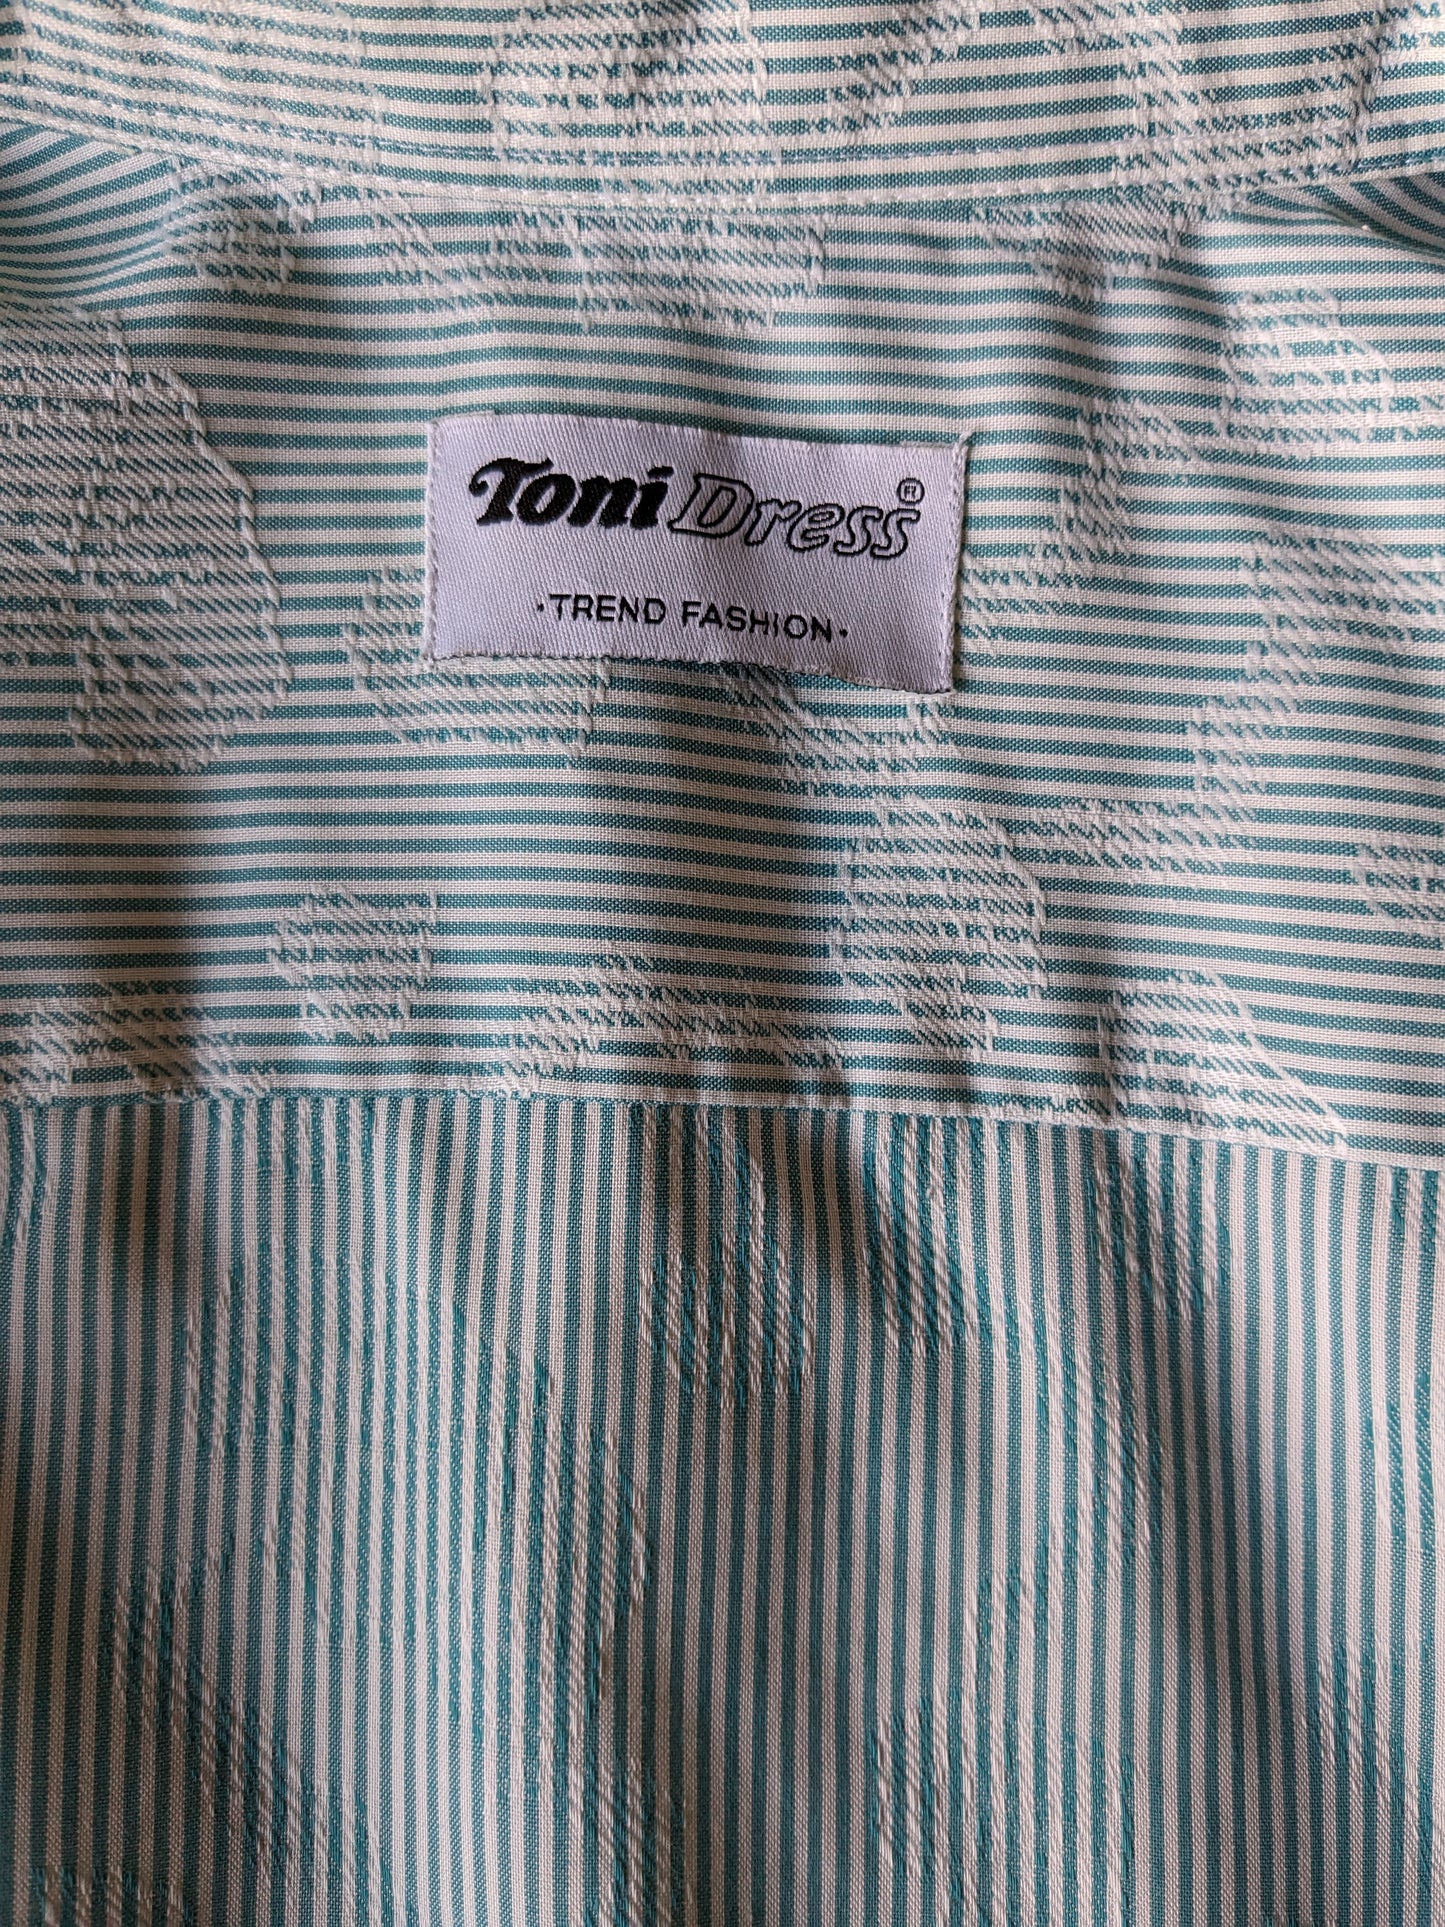 Vintage Toni Dress Shirt. Green white striped with white leaf motif. Size M.